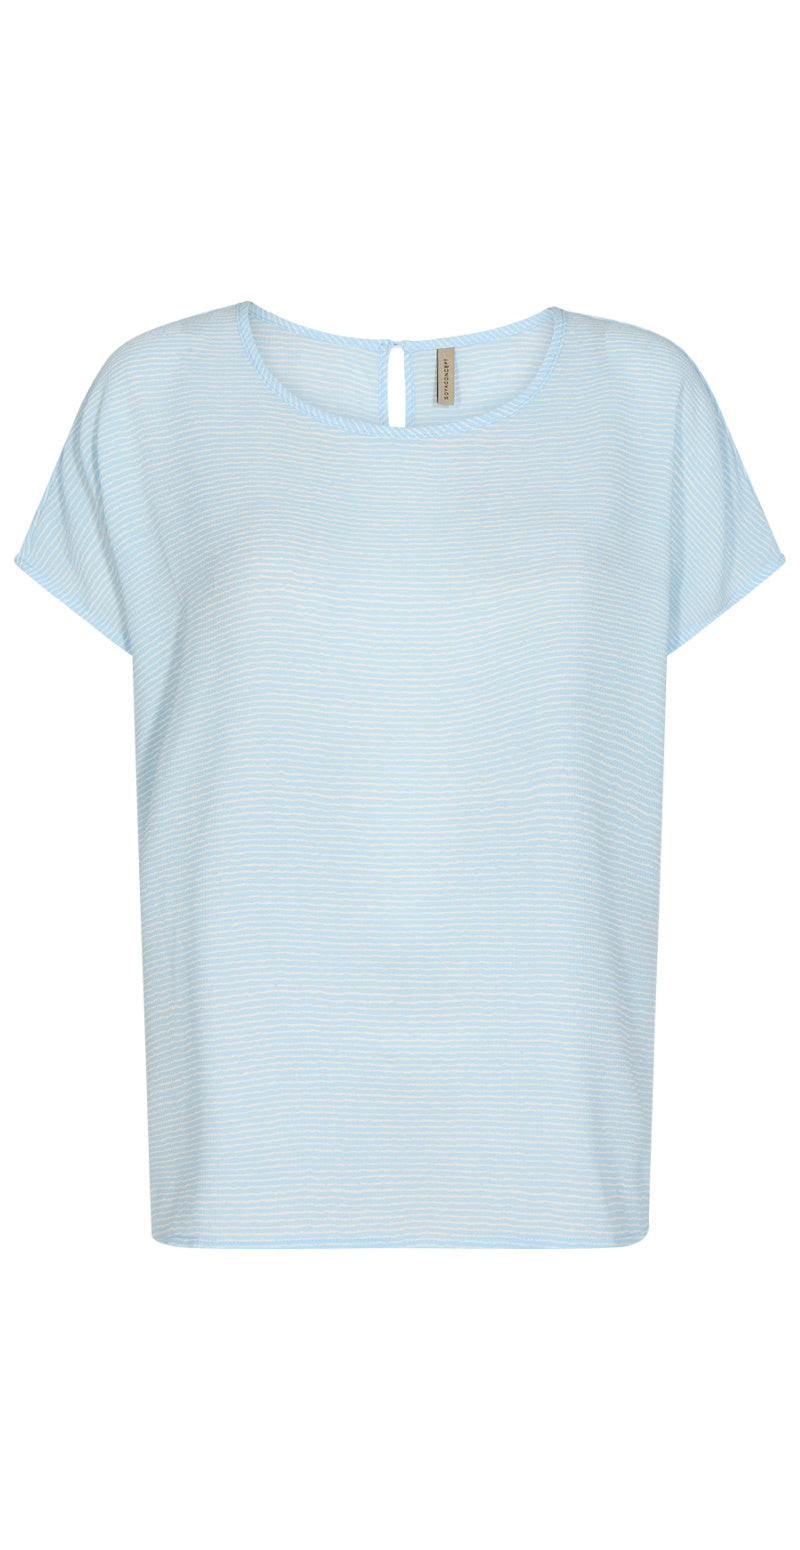 T-shirt med stribet struktur lysblå